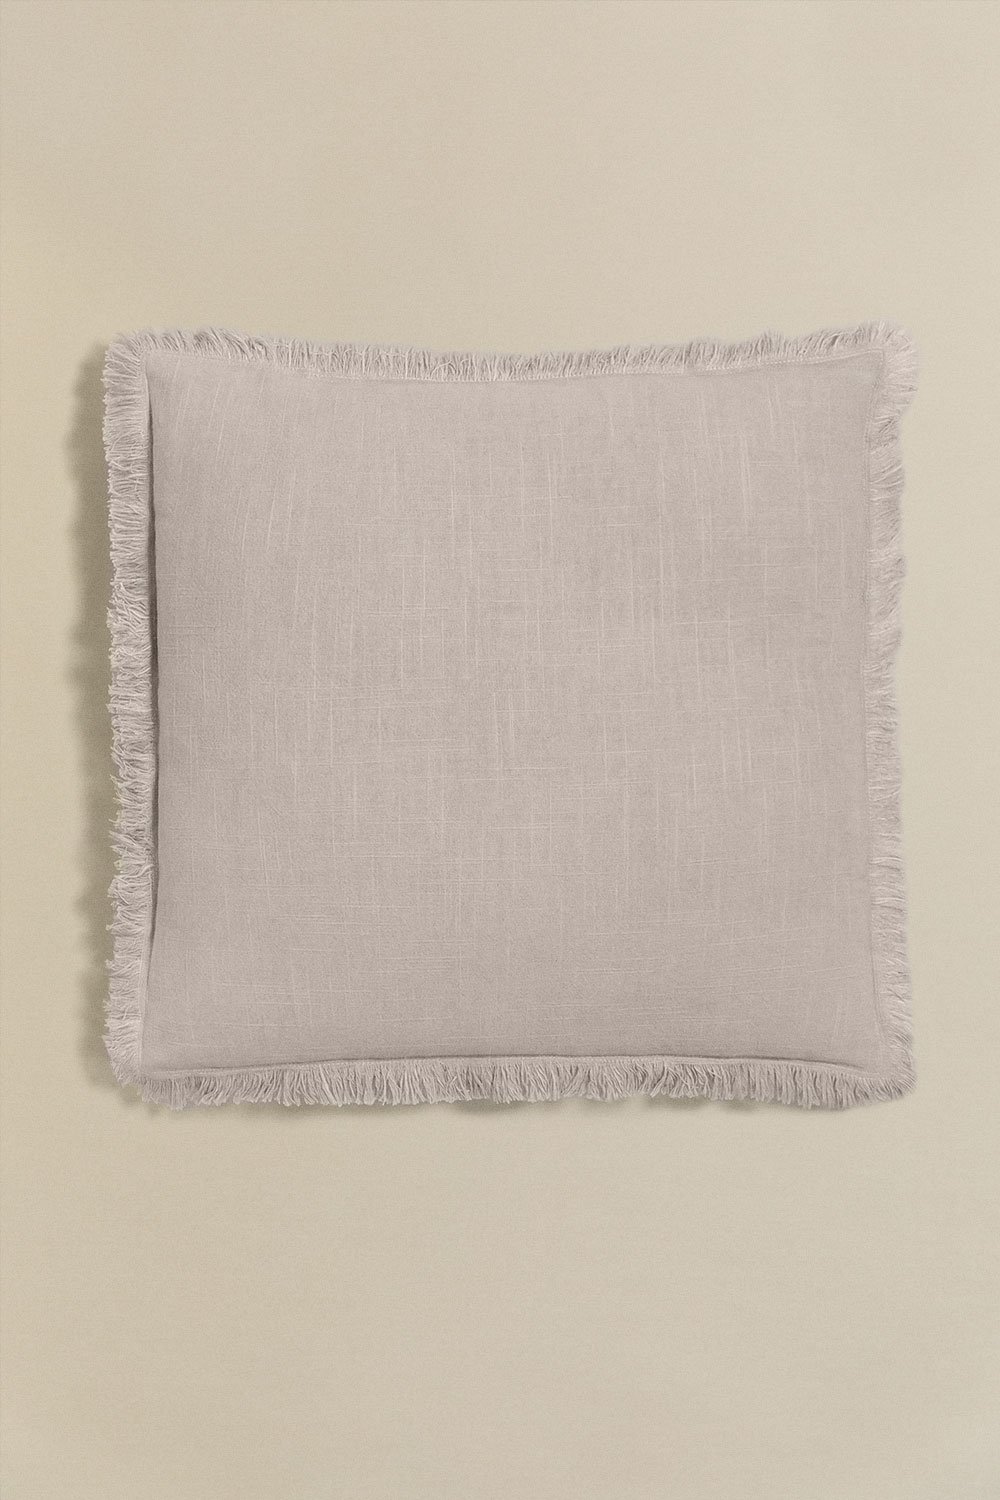 Almofada quadrada de algodão (45x45 cm) Nedeliya, imagem de galeria 1